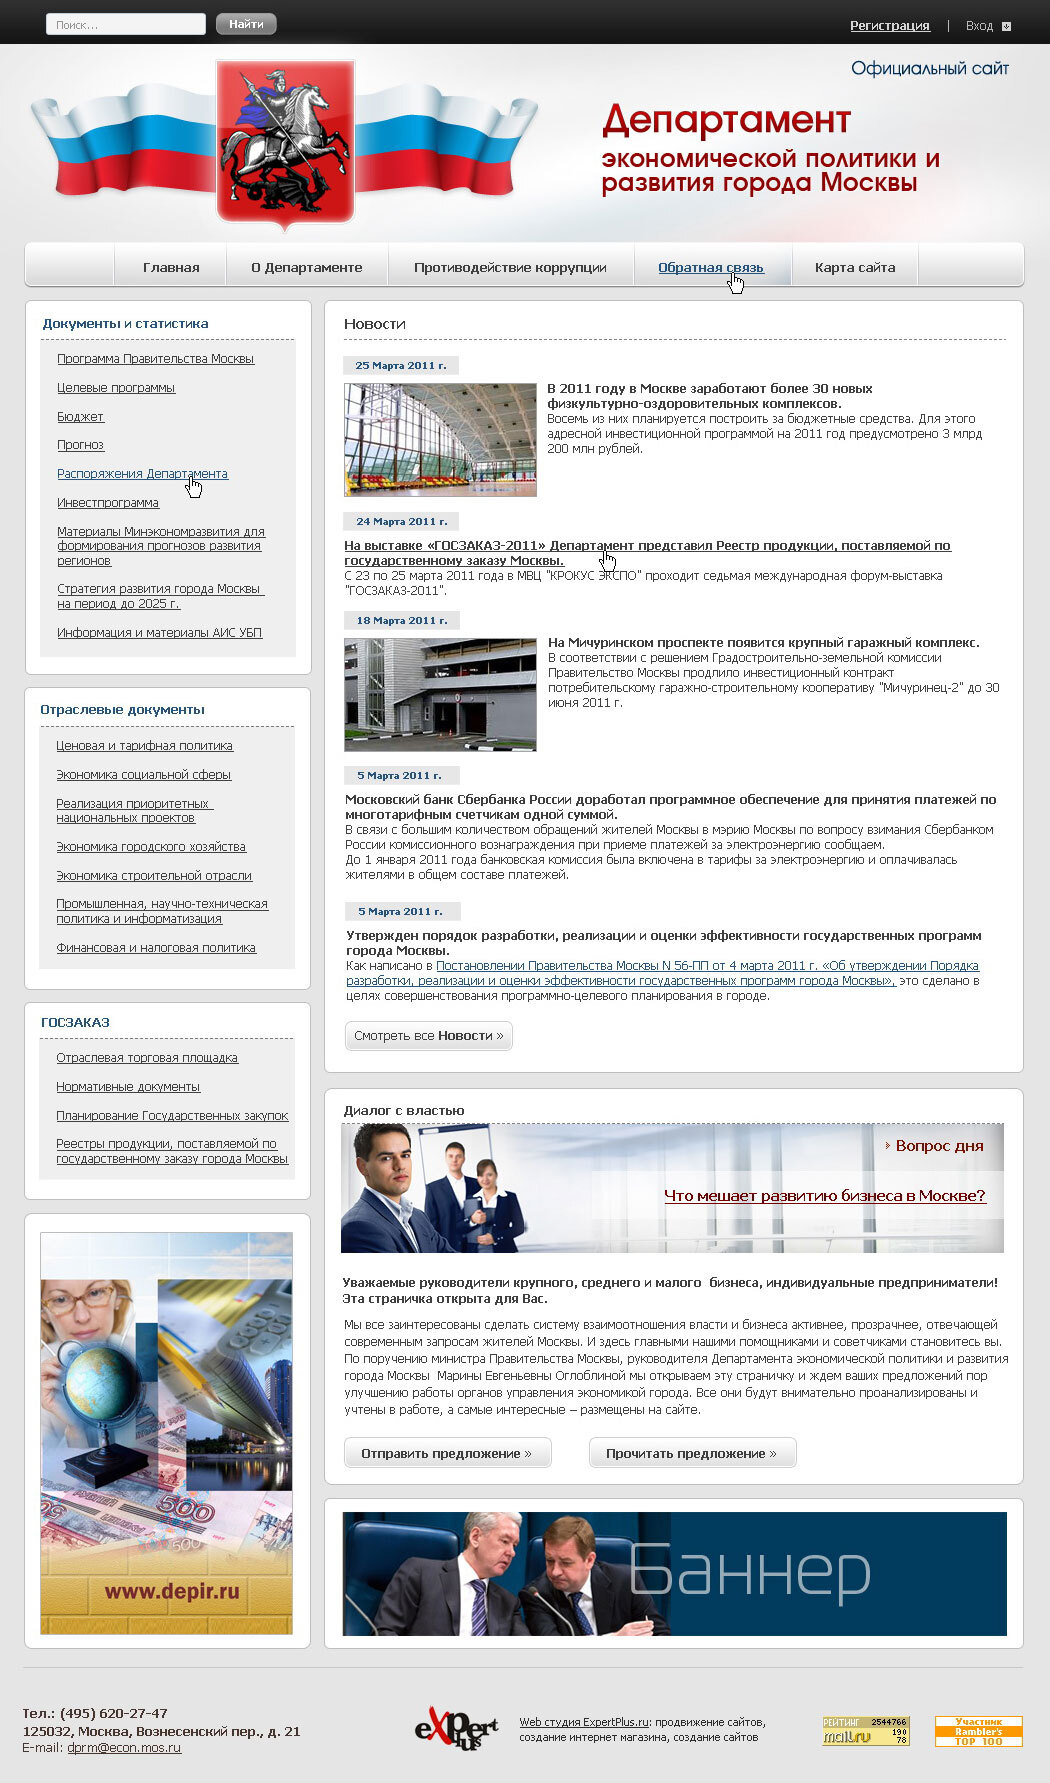 Сайт "Департамент экономической политики и развития города Москвы"